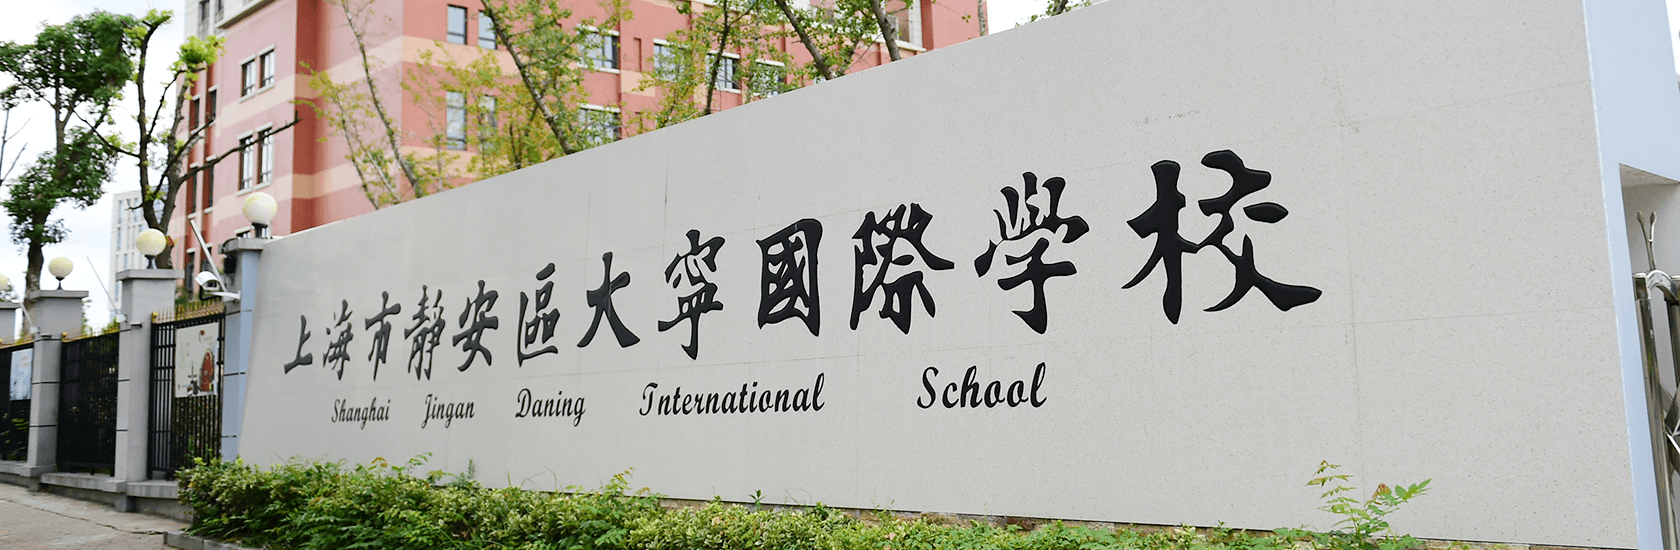 上海市静安区大宁国际学校创设工作坊 探索新型家校共育